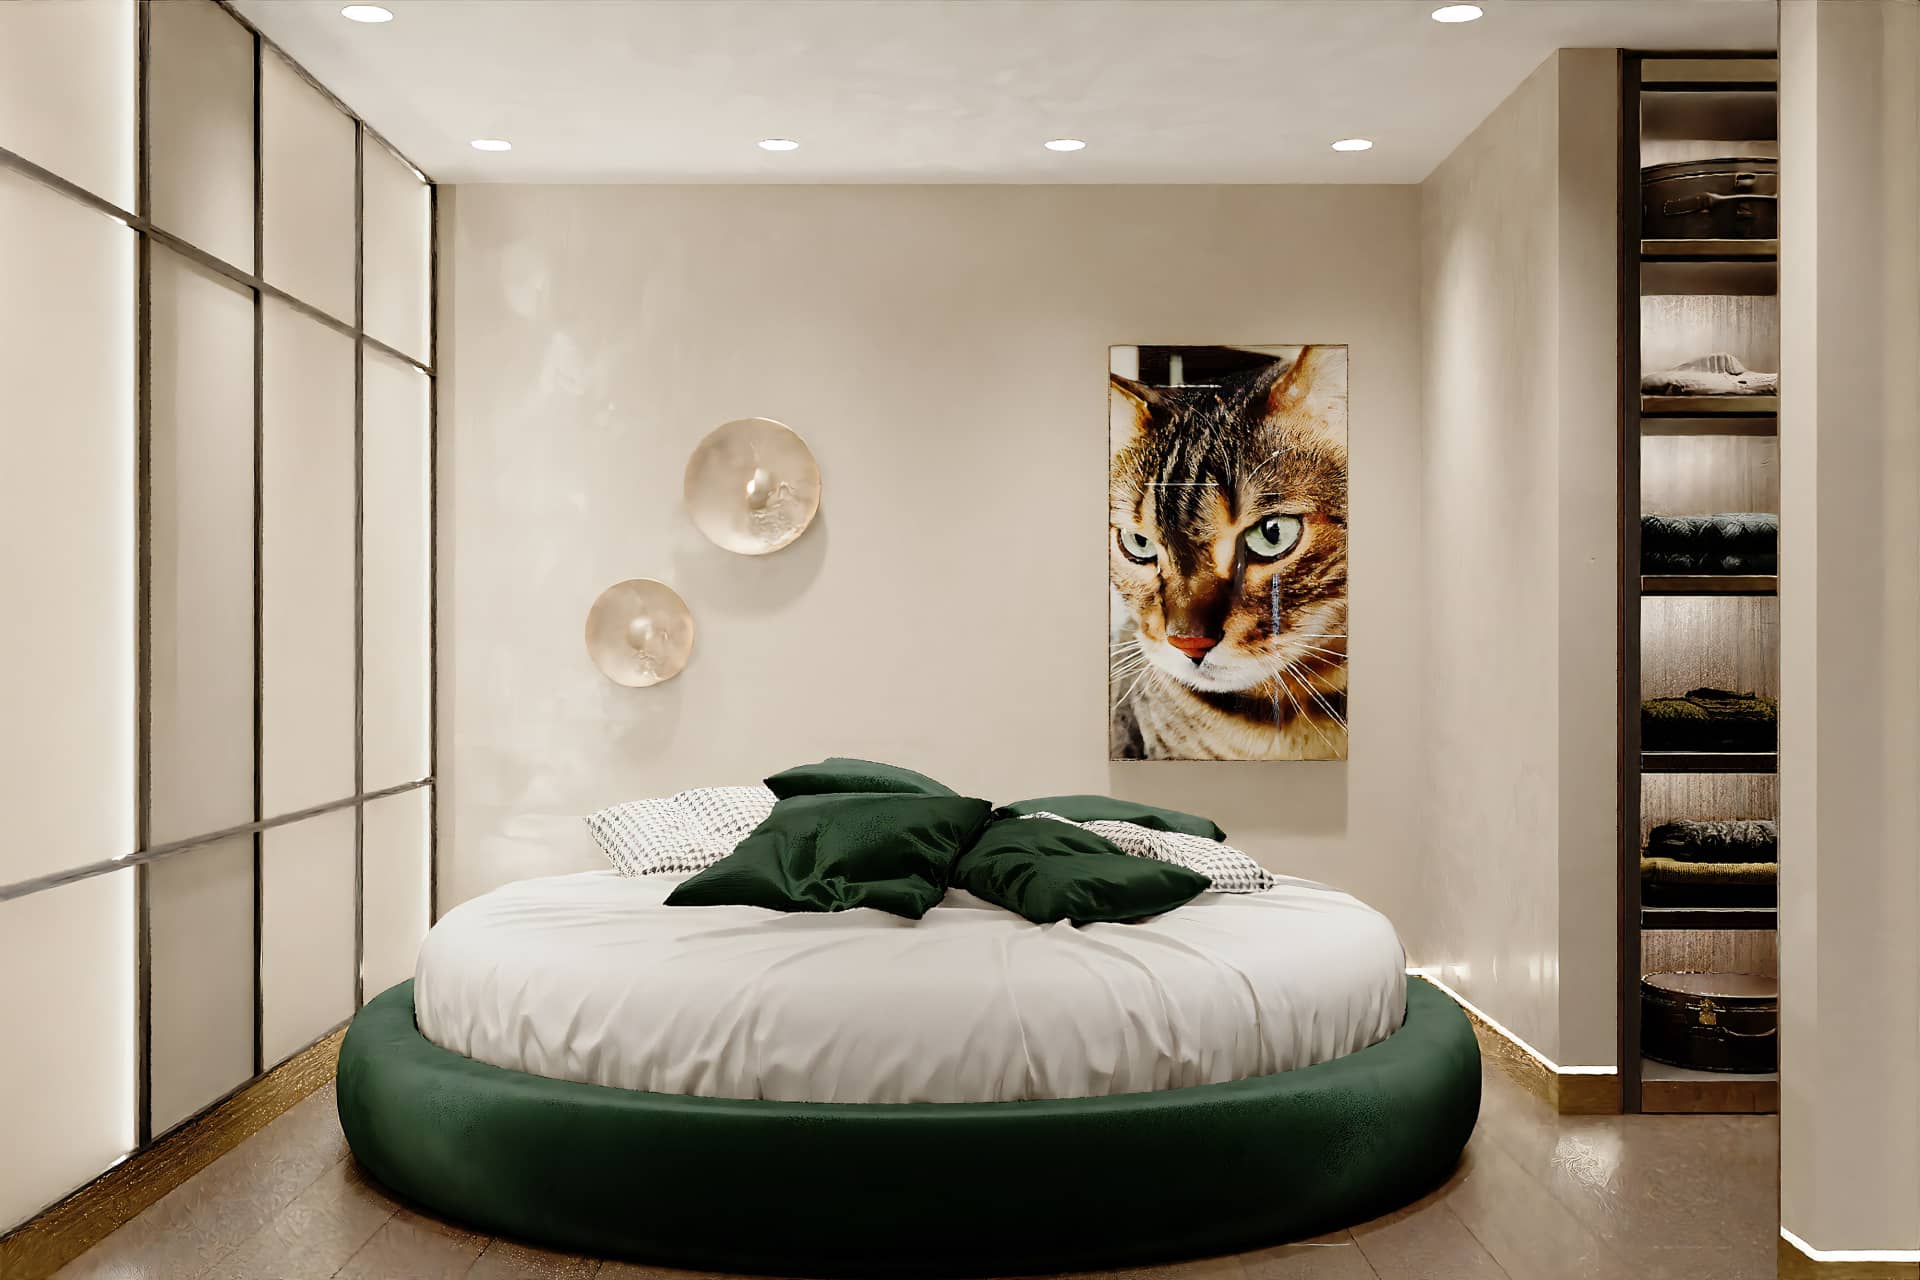 Оформление интерьера спальни в стиле ар-деко. Фото № 69763.